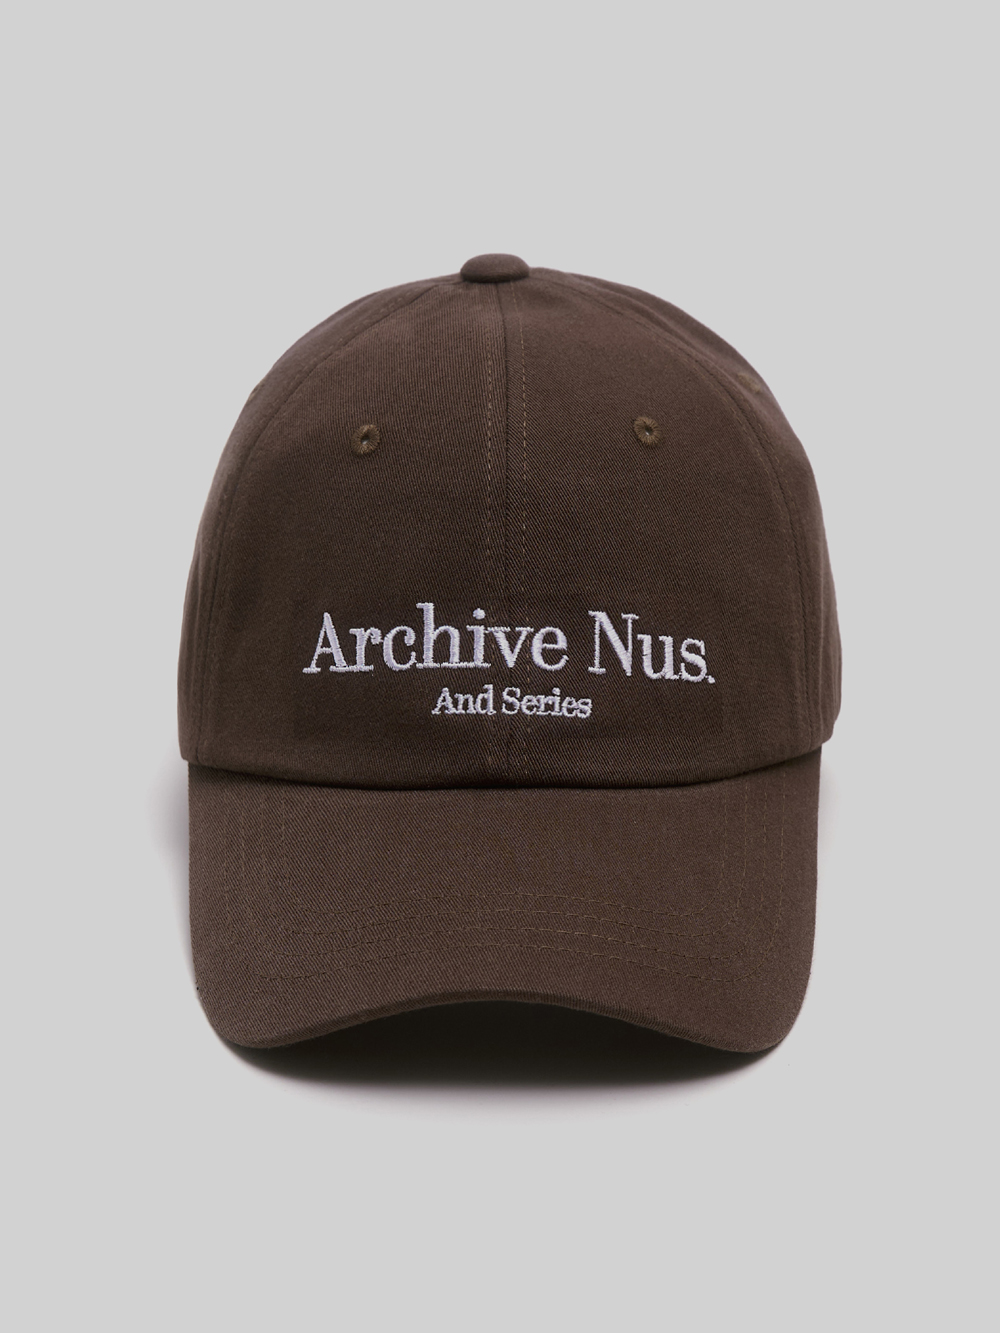 Nus. arch ball cap (brown)